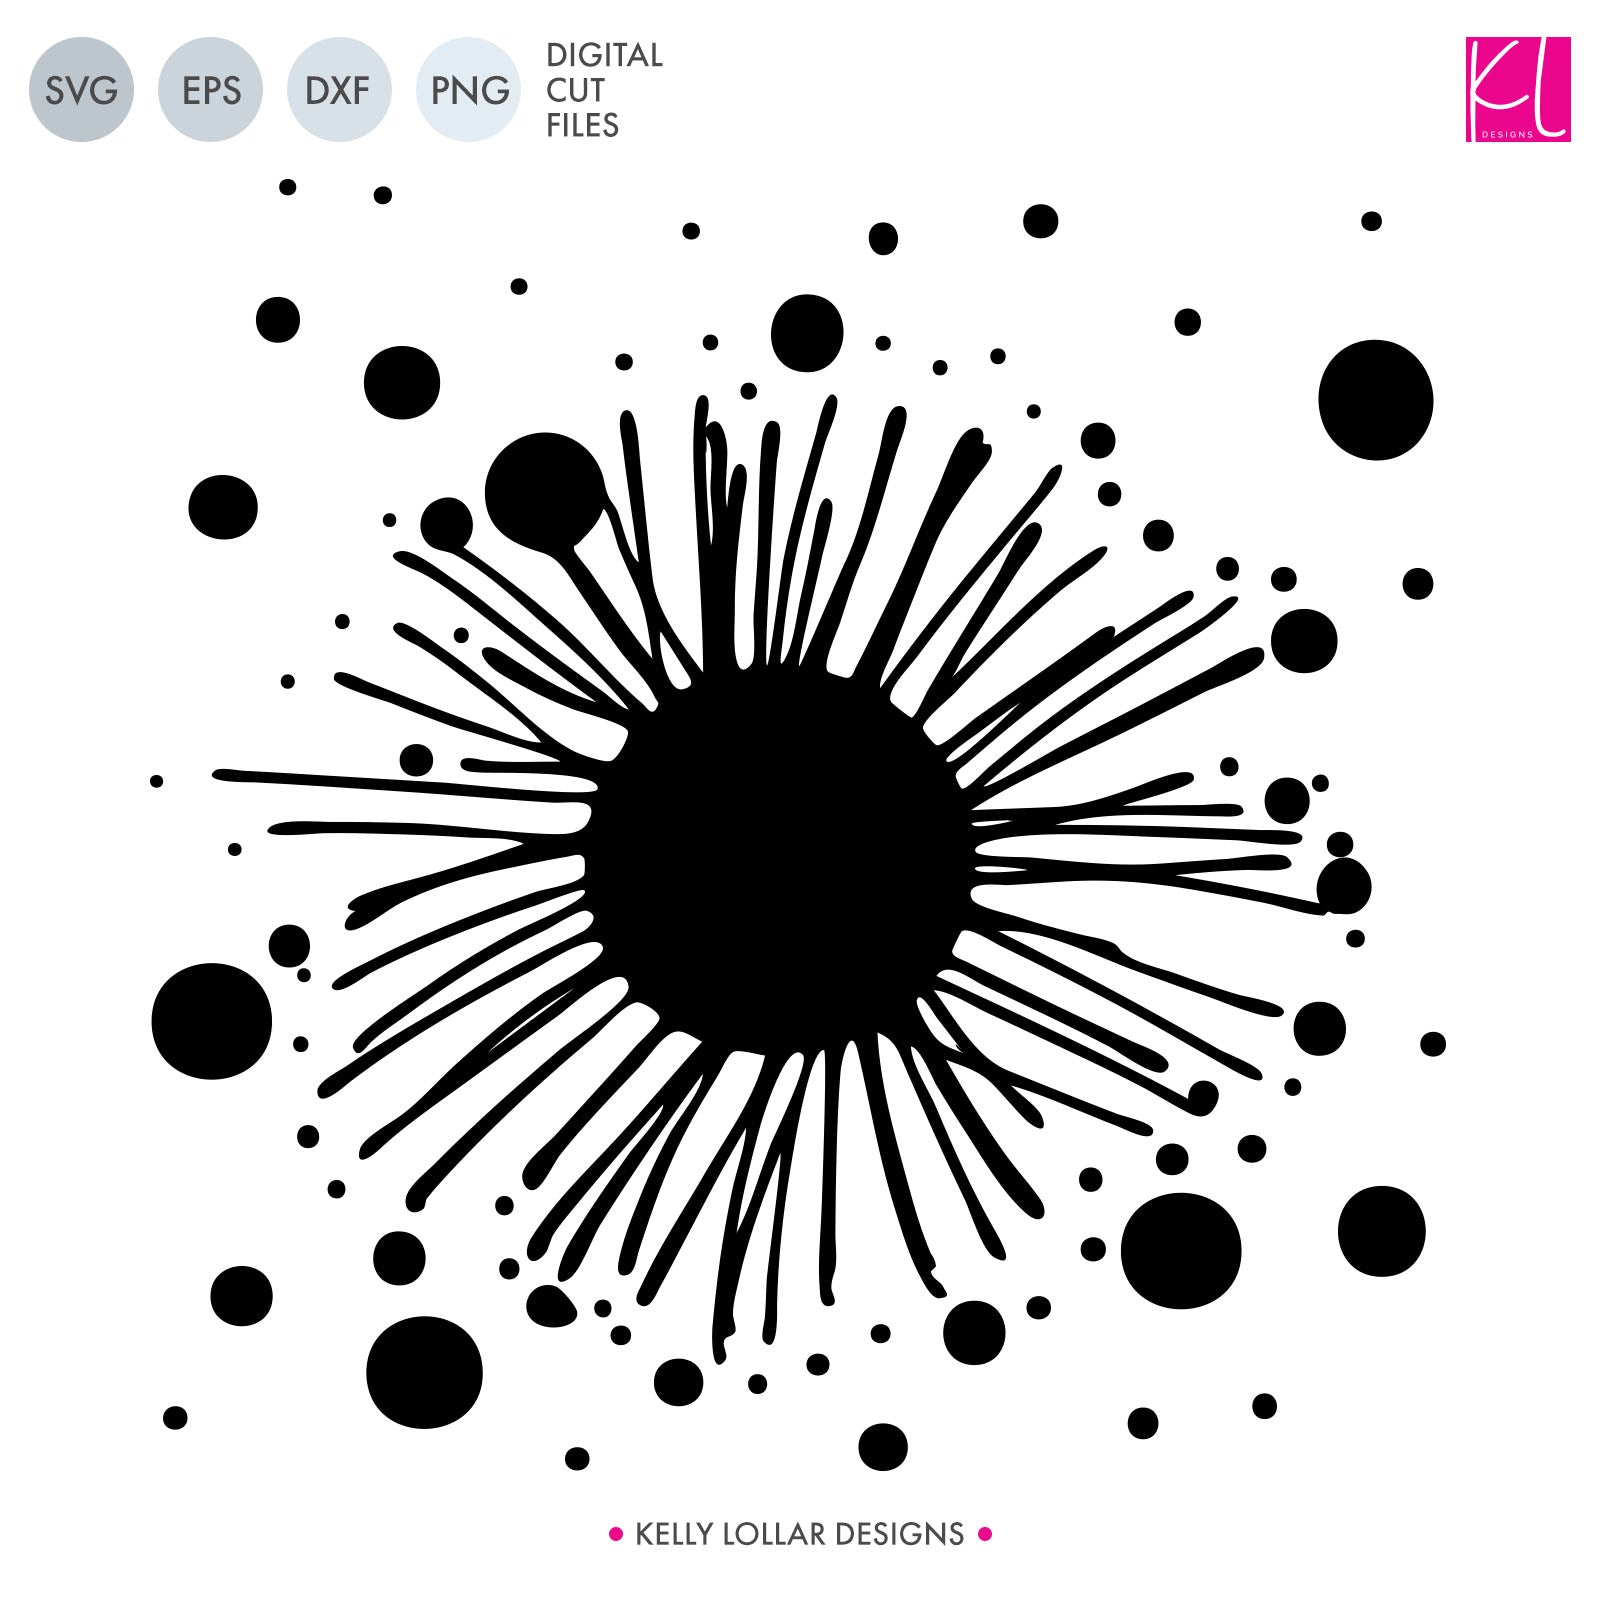 Rainbow Polka Dot Background in Illustrator, SVG, JPG, EPS, PNG